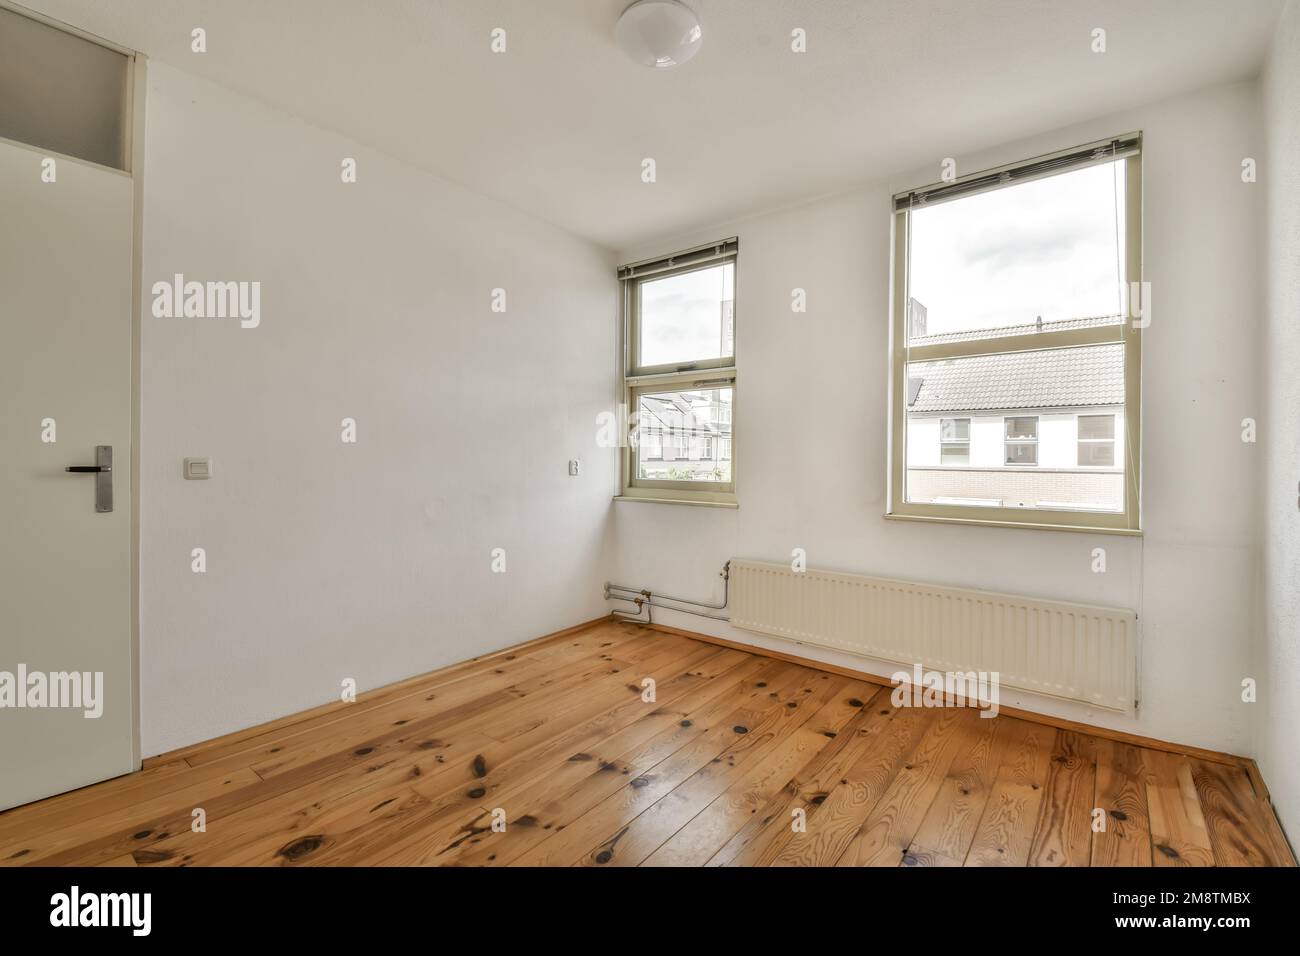 una camera vuota con pavimento in legno e pareti bianche è molto pulita, ma non c'è luce Foto Stock